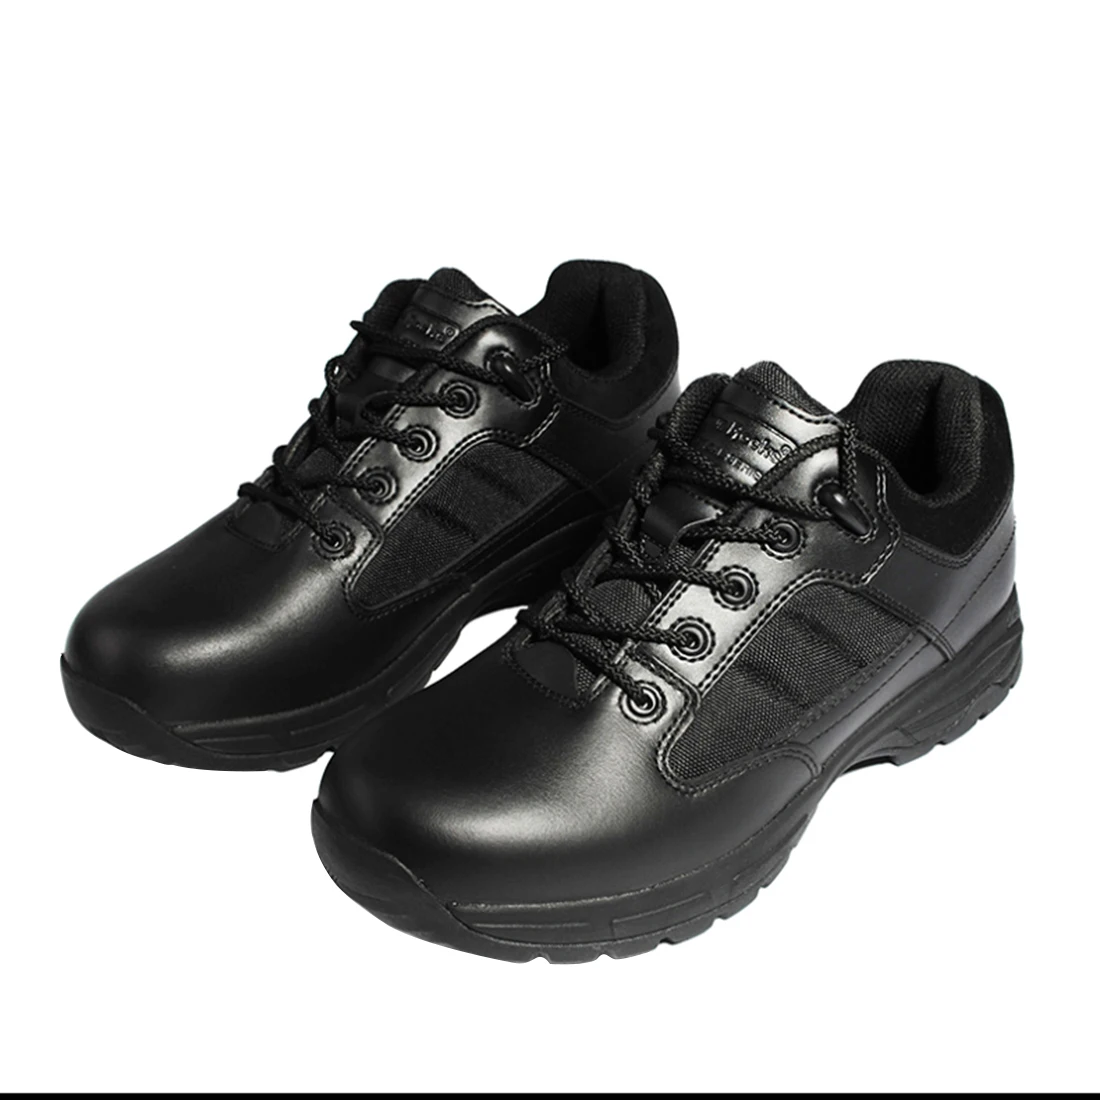 Tanio Workerkit Low-Cut Anti-Stab Tactical Shoes dla mężczyzn sklep